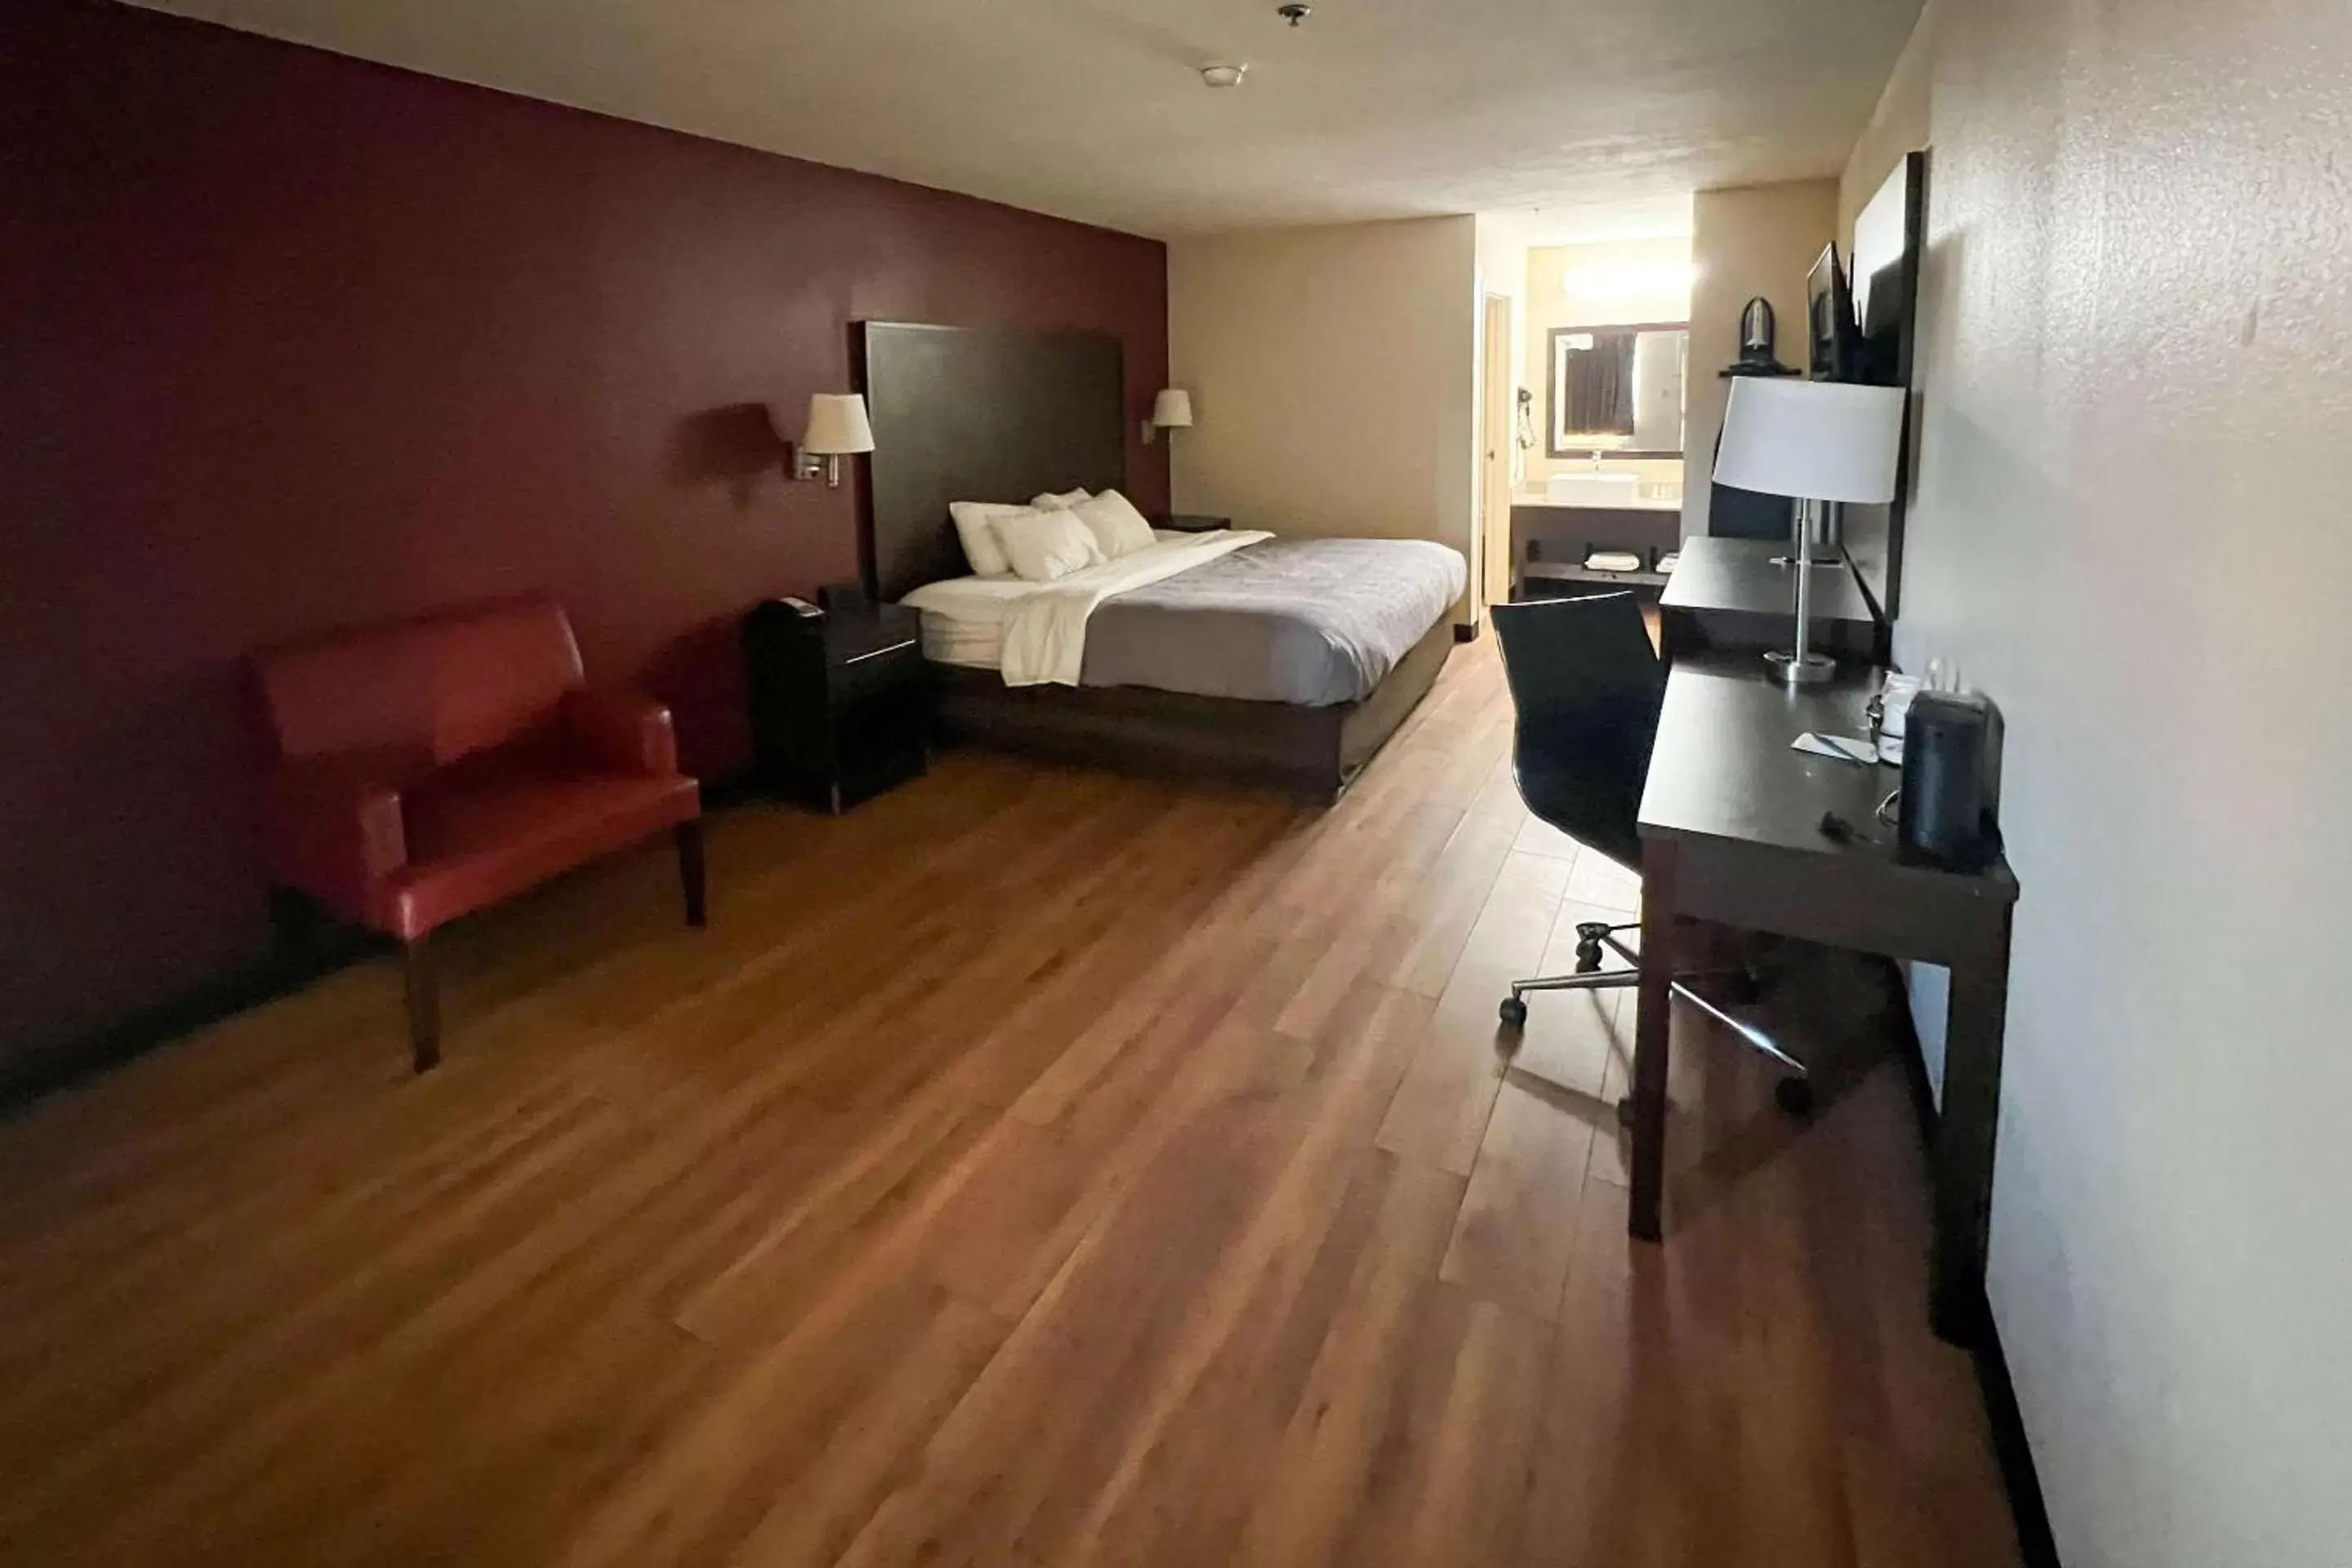 Bedroom in Quality Inn & Suites